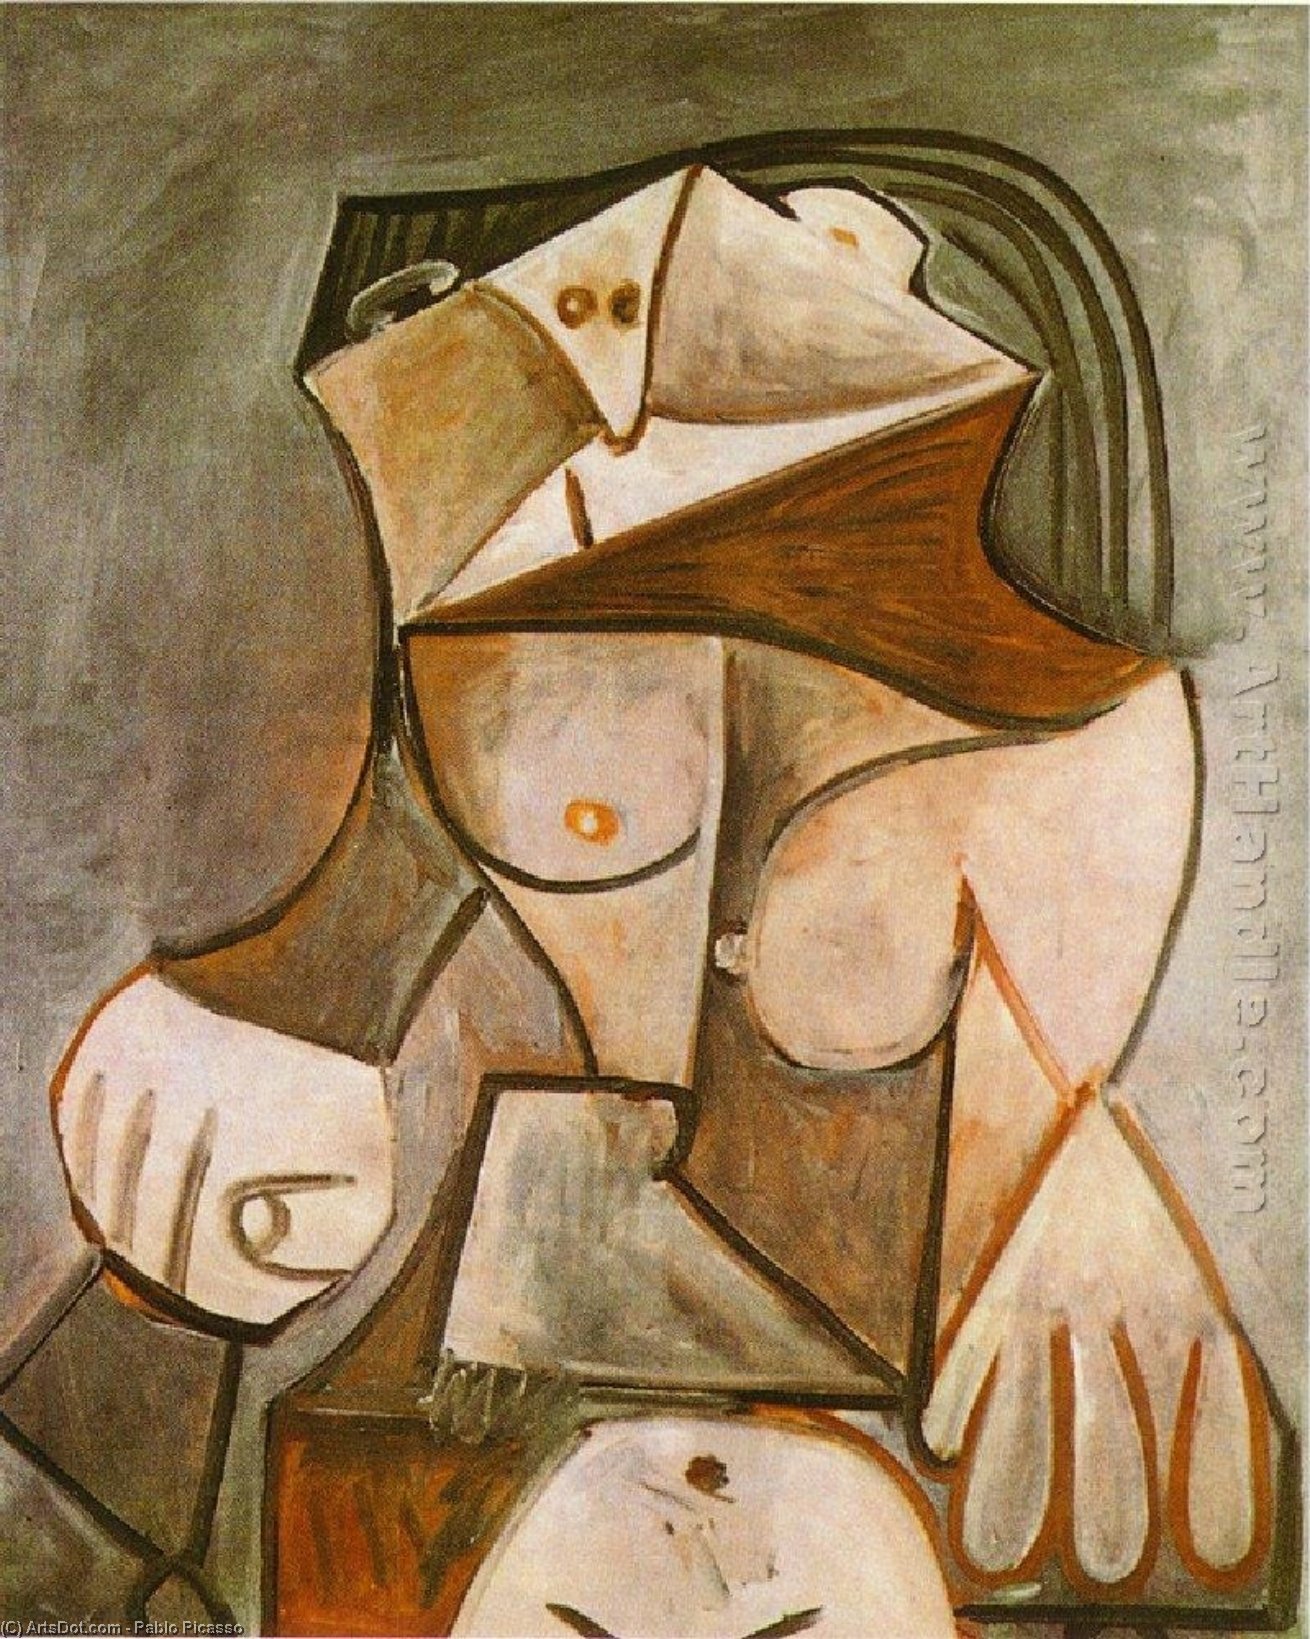 WikiOO.org - Enciclopédia das Belas Artes - Pintura, Arte por Pablo Picasso - Crouching female nude